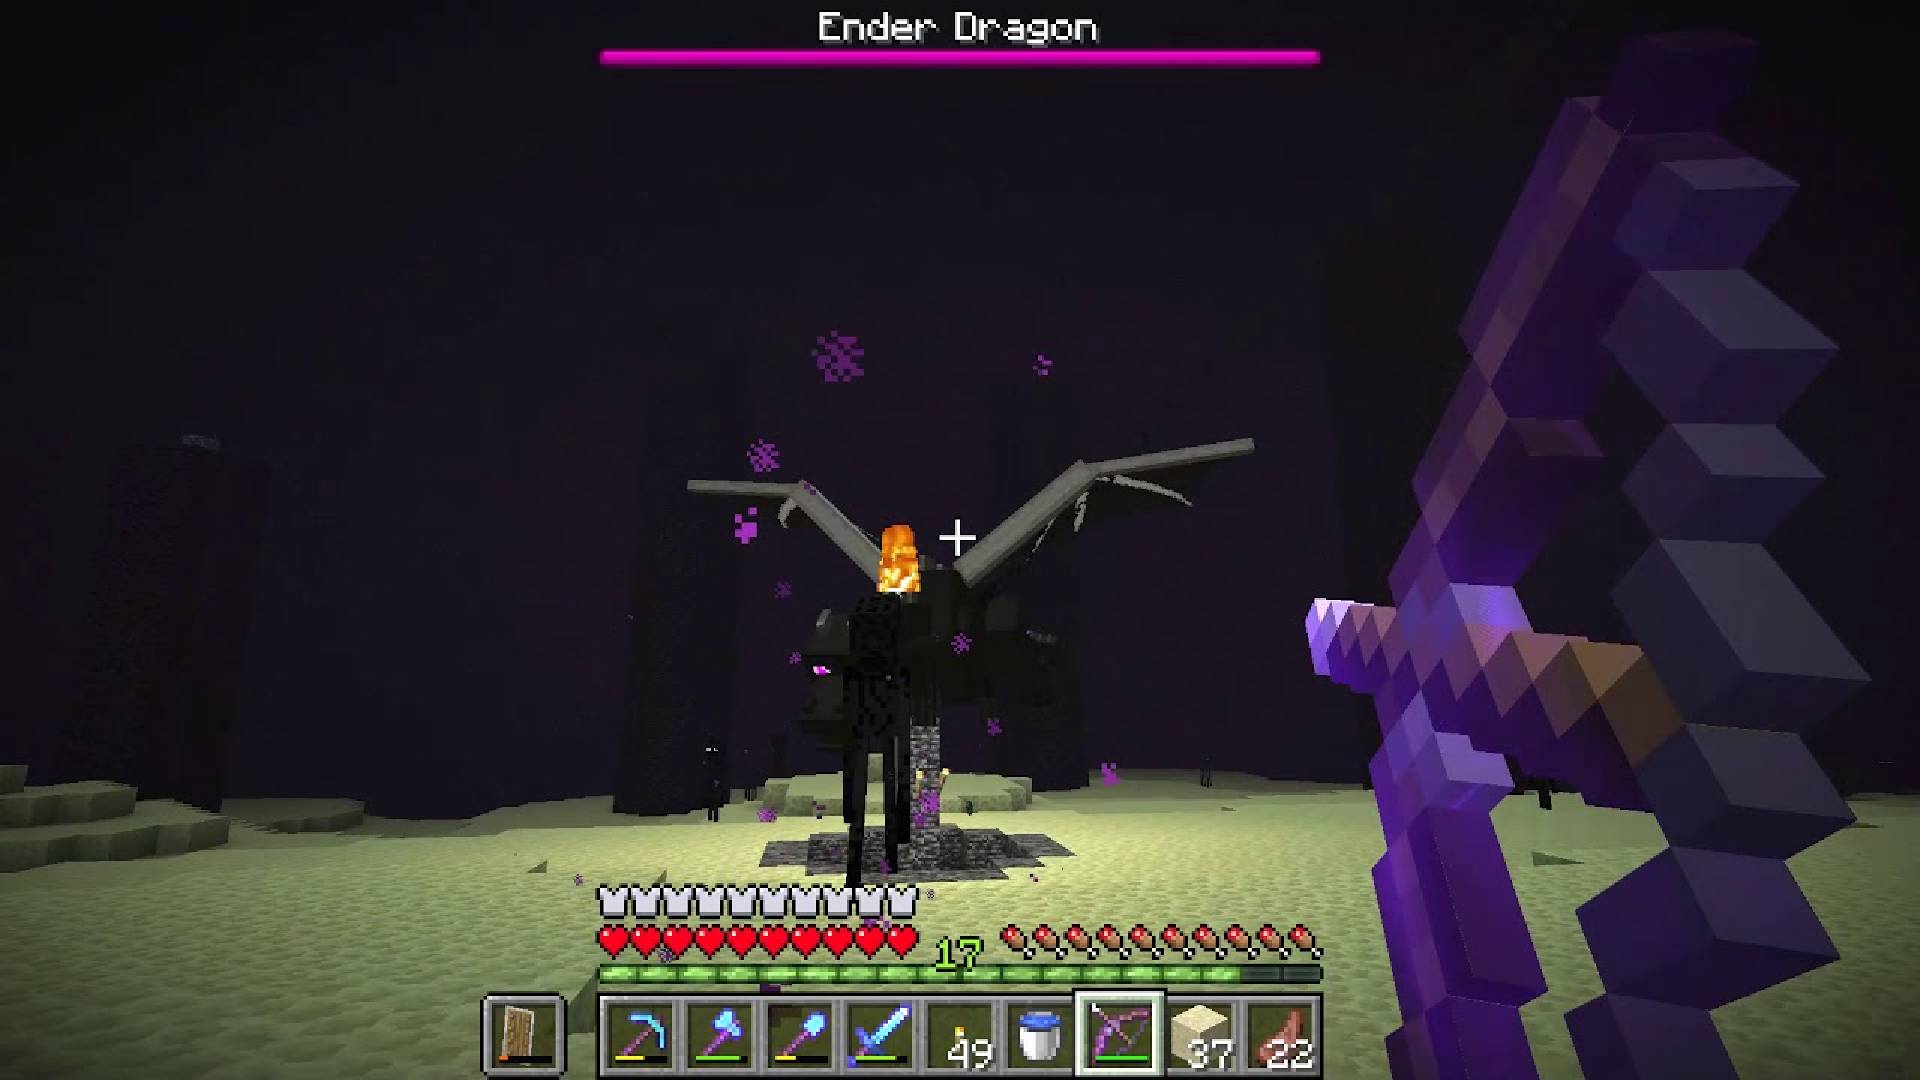 Smok Endu z Minecrafta: obraz z gry Minecraft przedstawia gracza atakującego gigantycznego smoka, znanego jako Smok Kresu